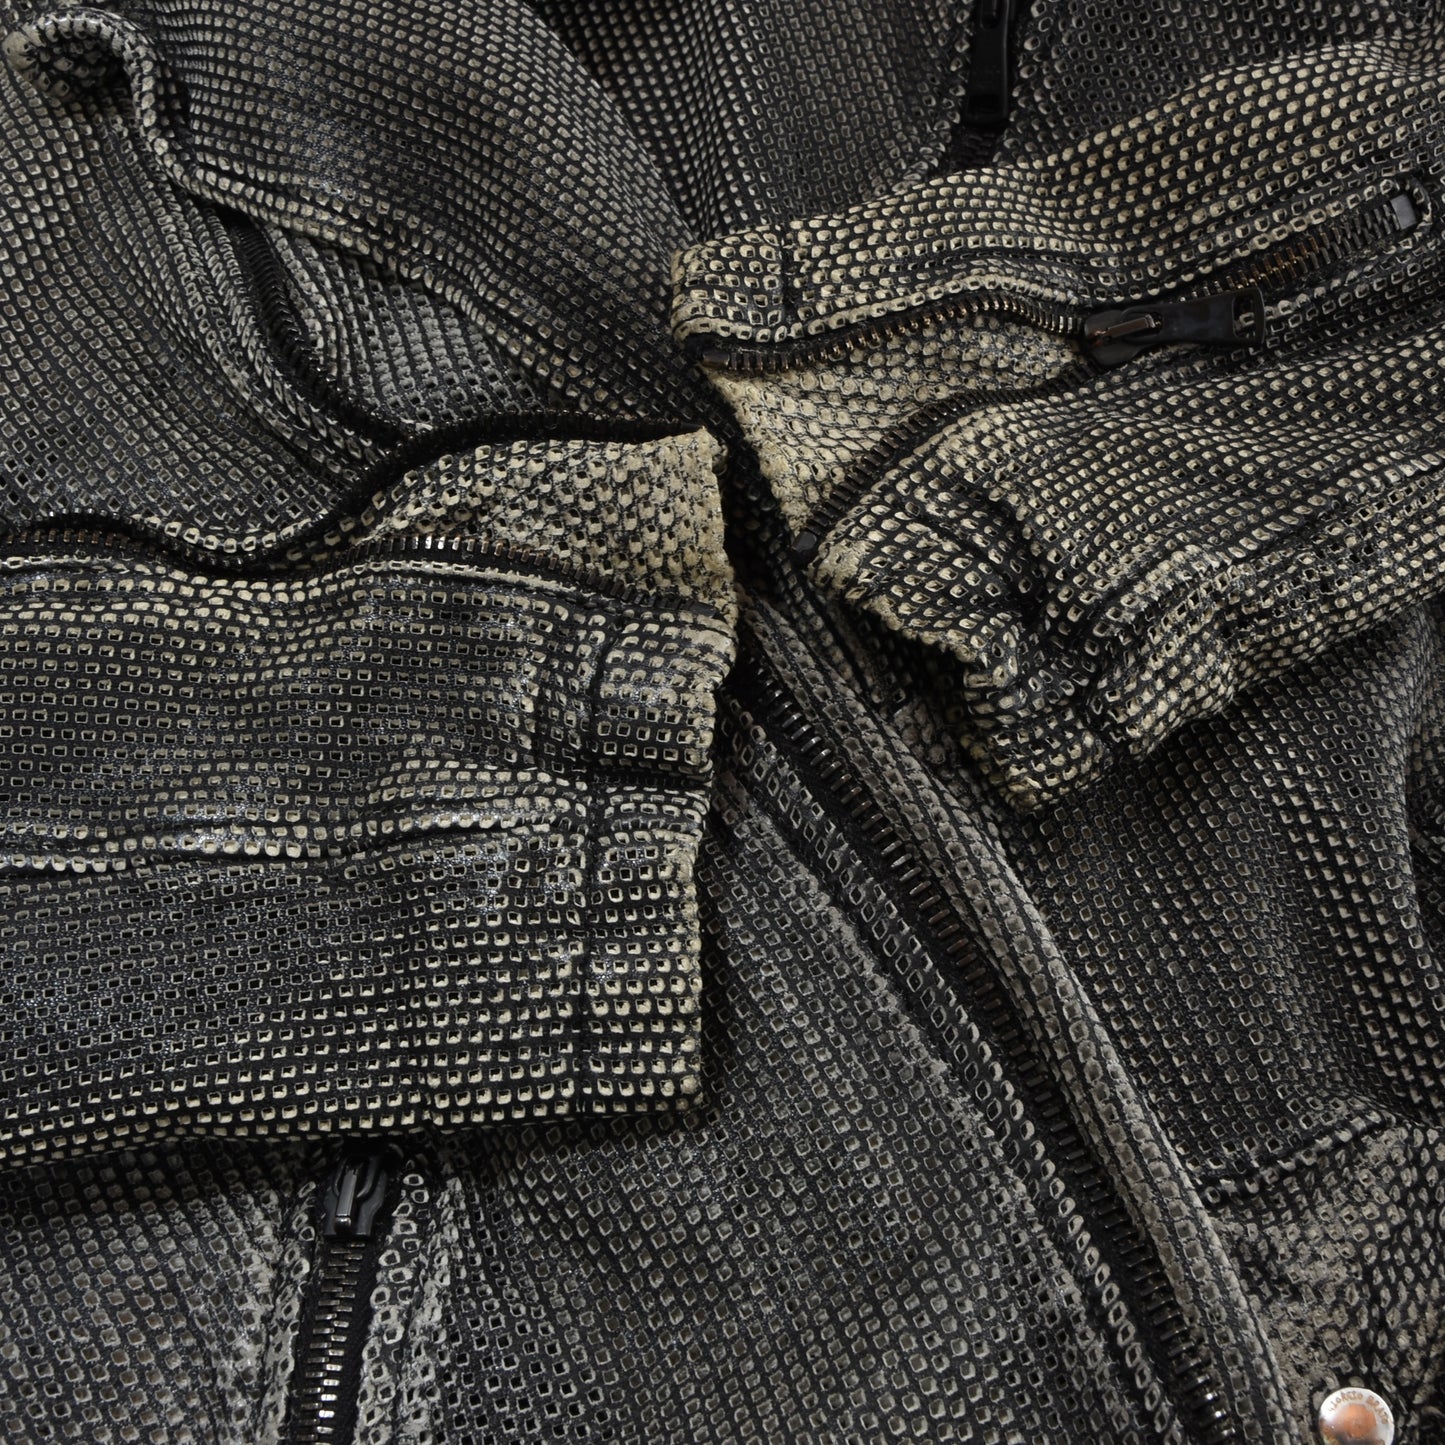 Giorgio Brato Leather Jacket Size 54